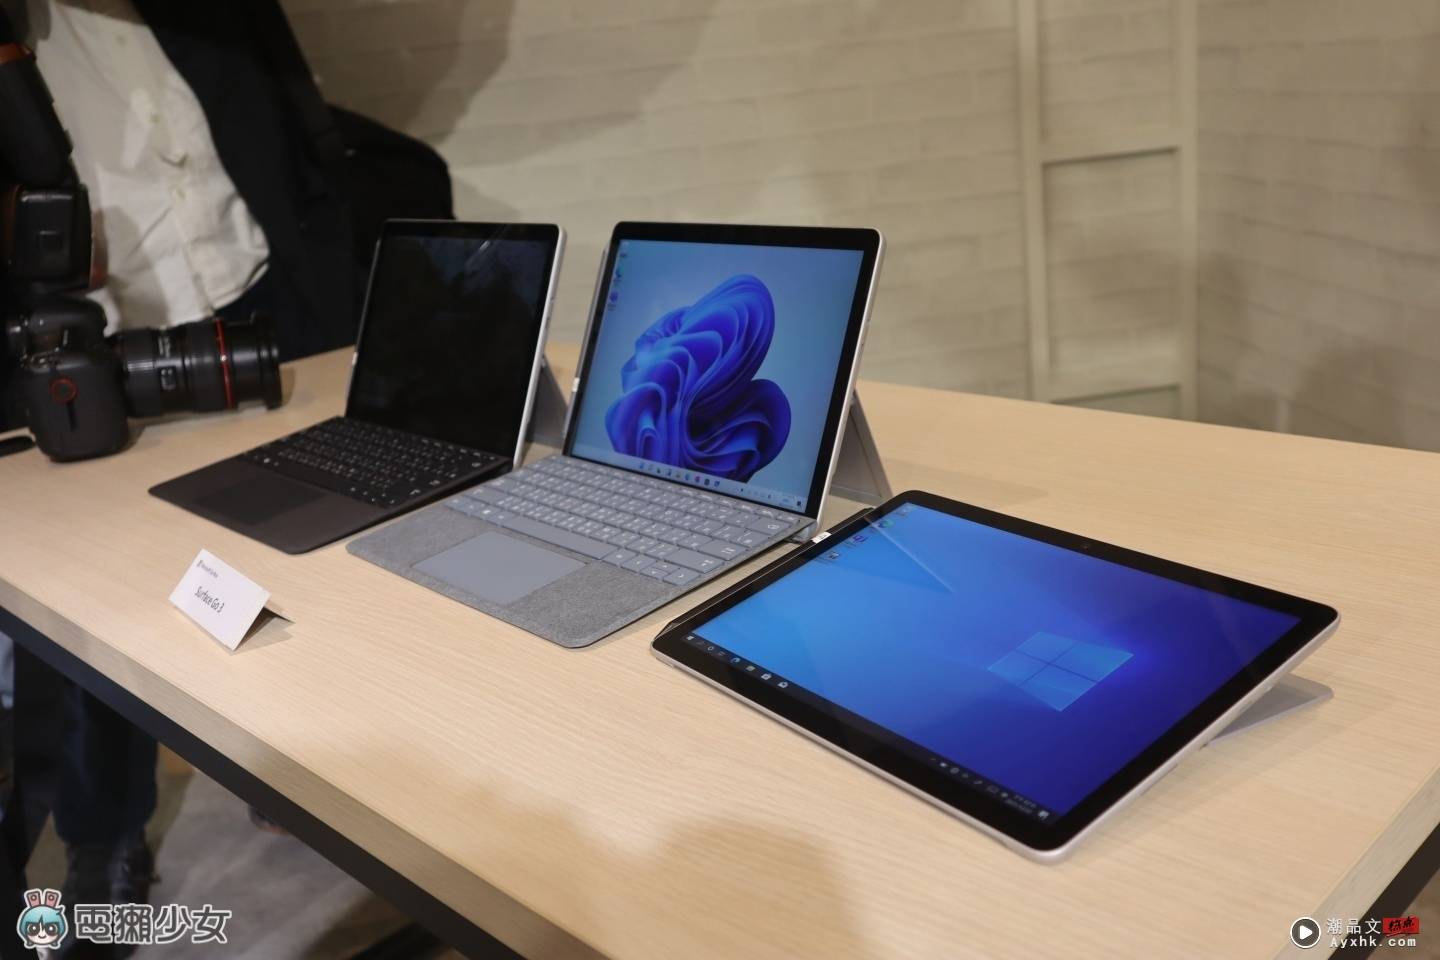 出门｜是笔电也是平板！Surface Go 3 二合一设计正式登台 还附一支笔可让你随时纪录！ 数码科技 图7张